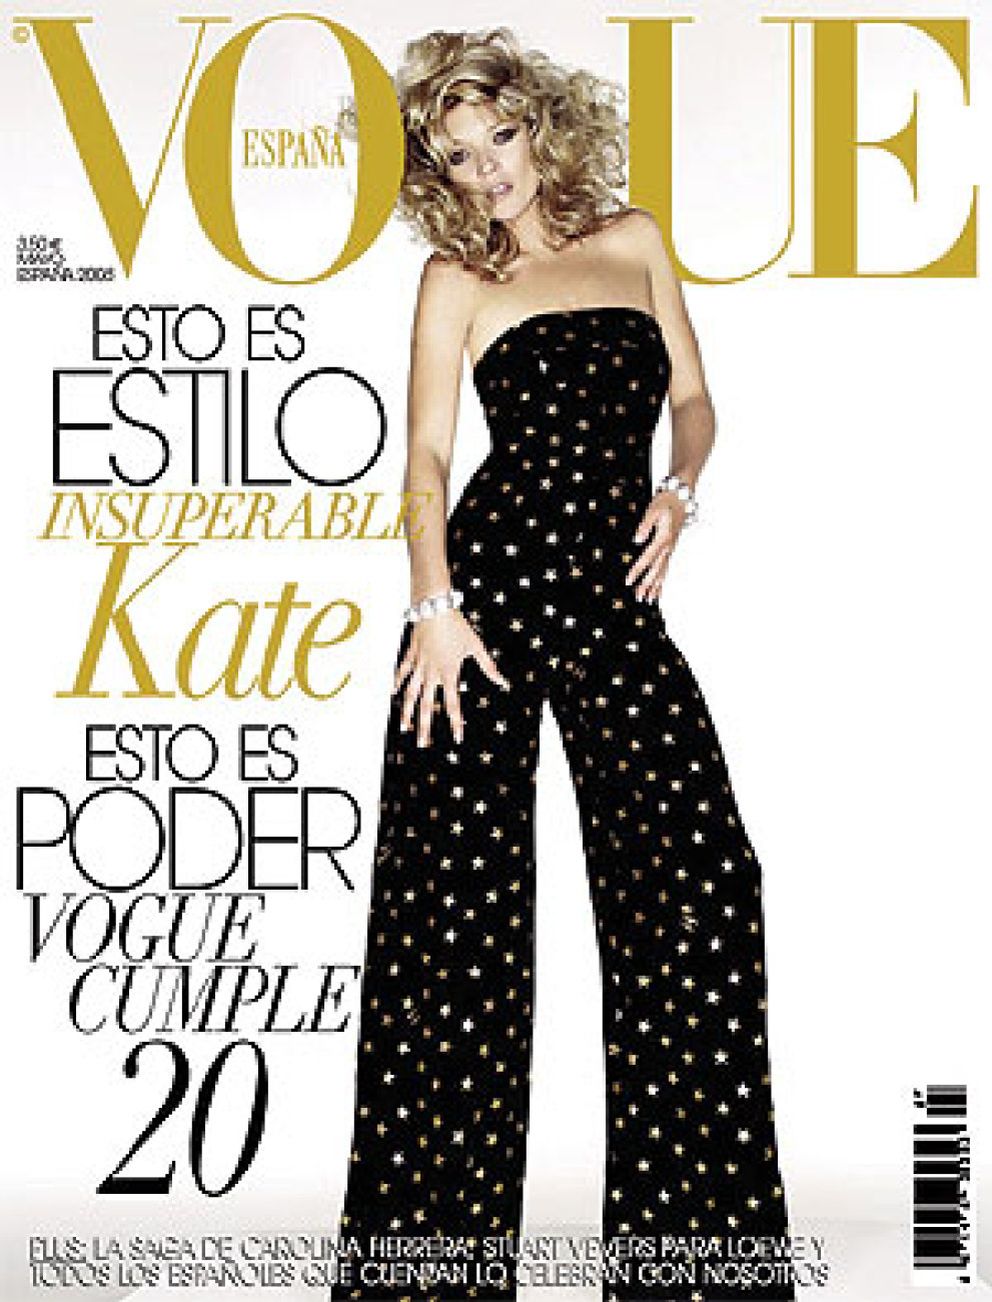 Las modelos que han aparecido más veces en la portada de Vogue